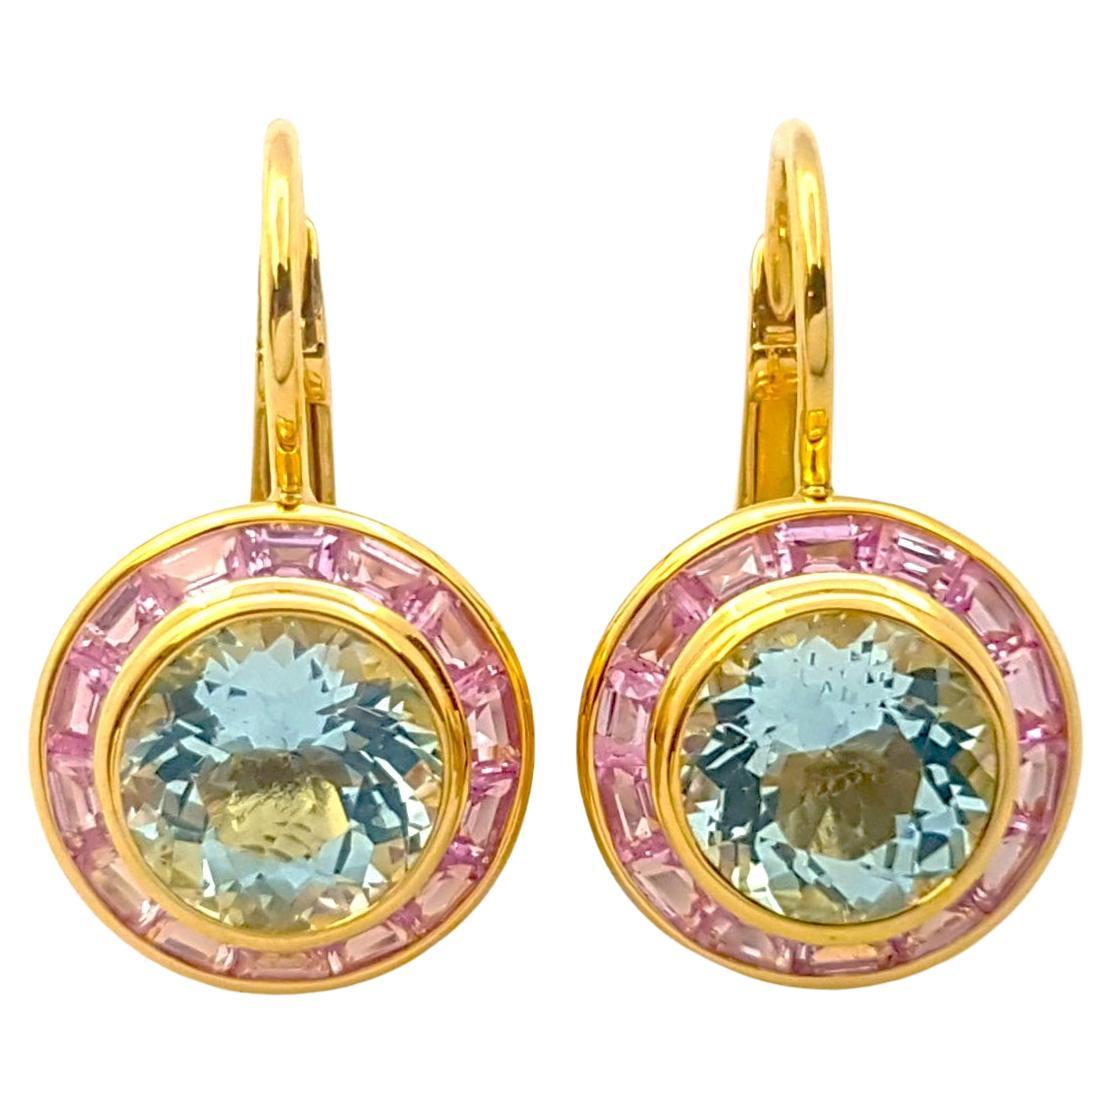 Boucles d'oreilles en aigue-marine et saphir rose serties dans des montures en or 18 carats